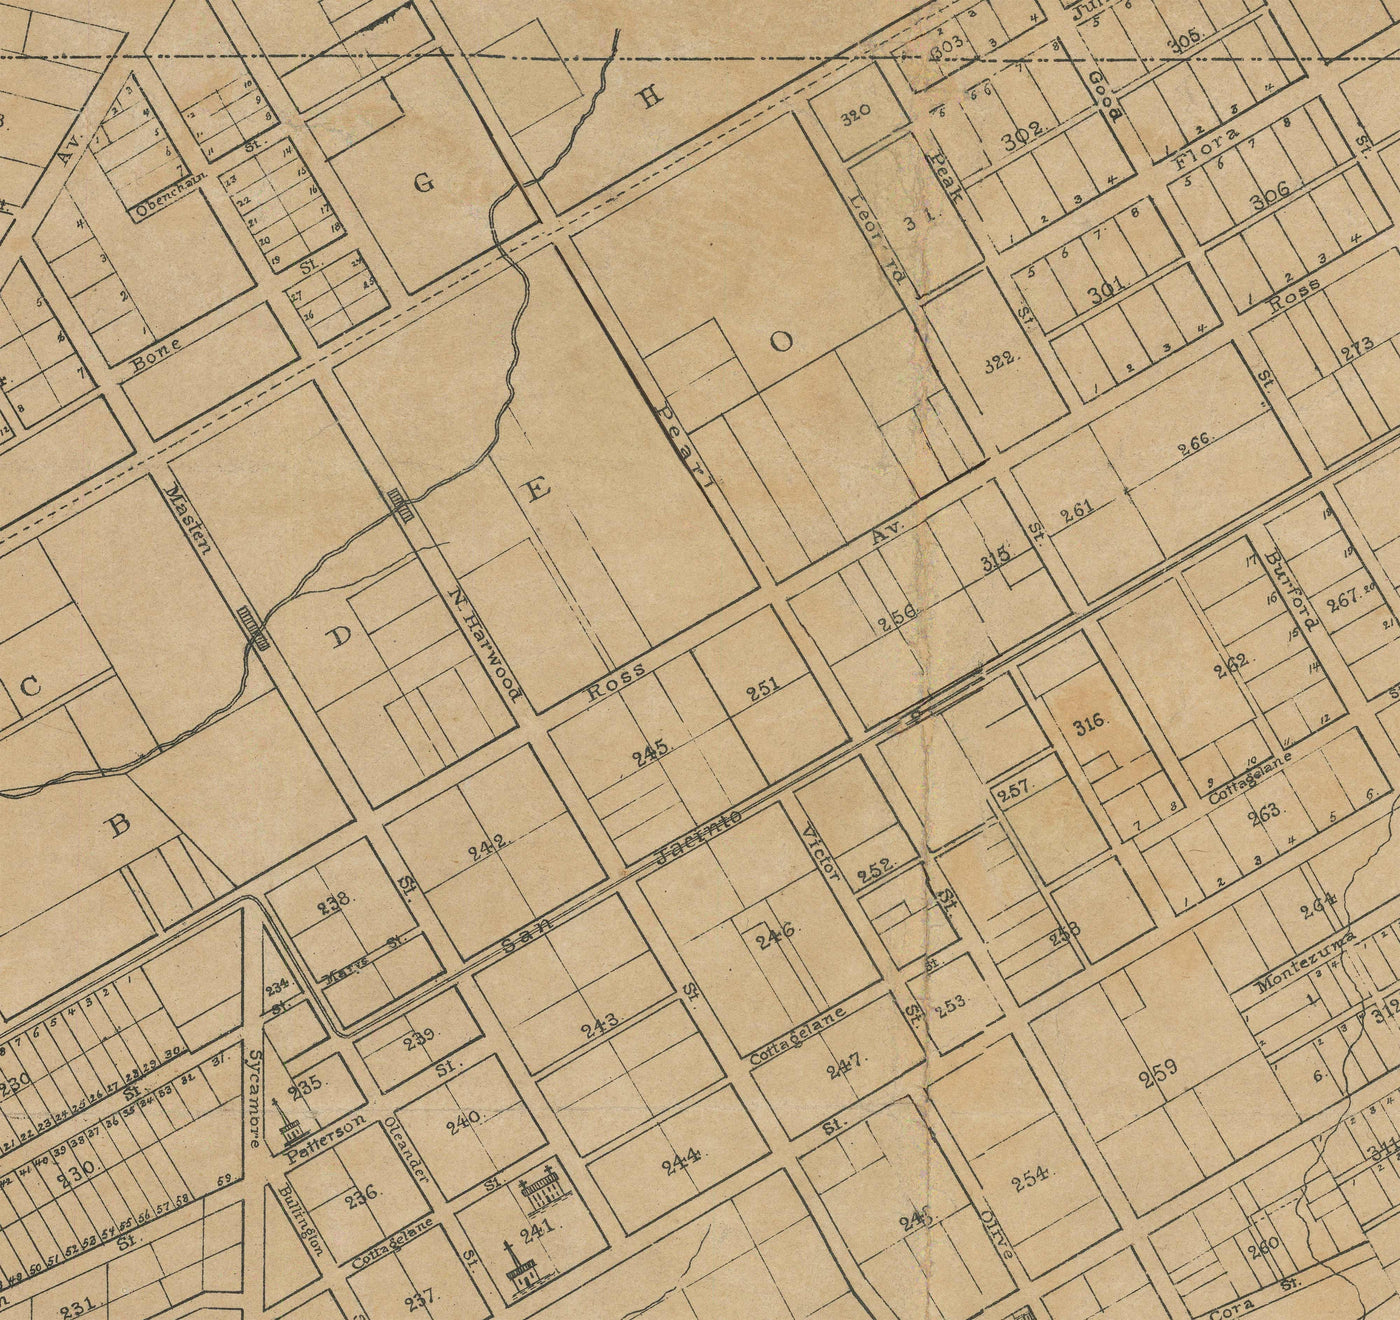 Alte Karte von Dallas, Texas 1878 von Jones & Murphy - Main St, Ellum, Downtown, Arts District, Bryan Place